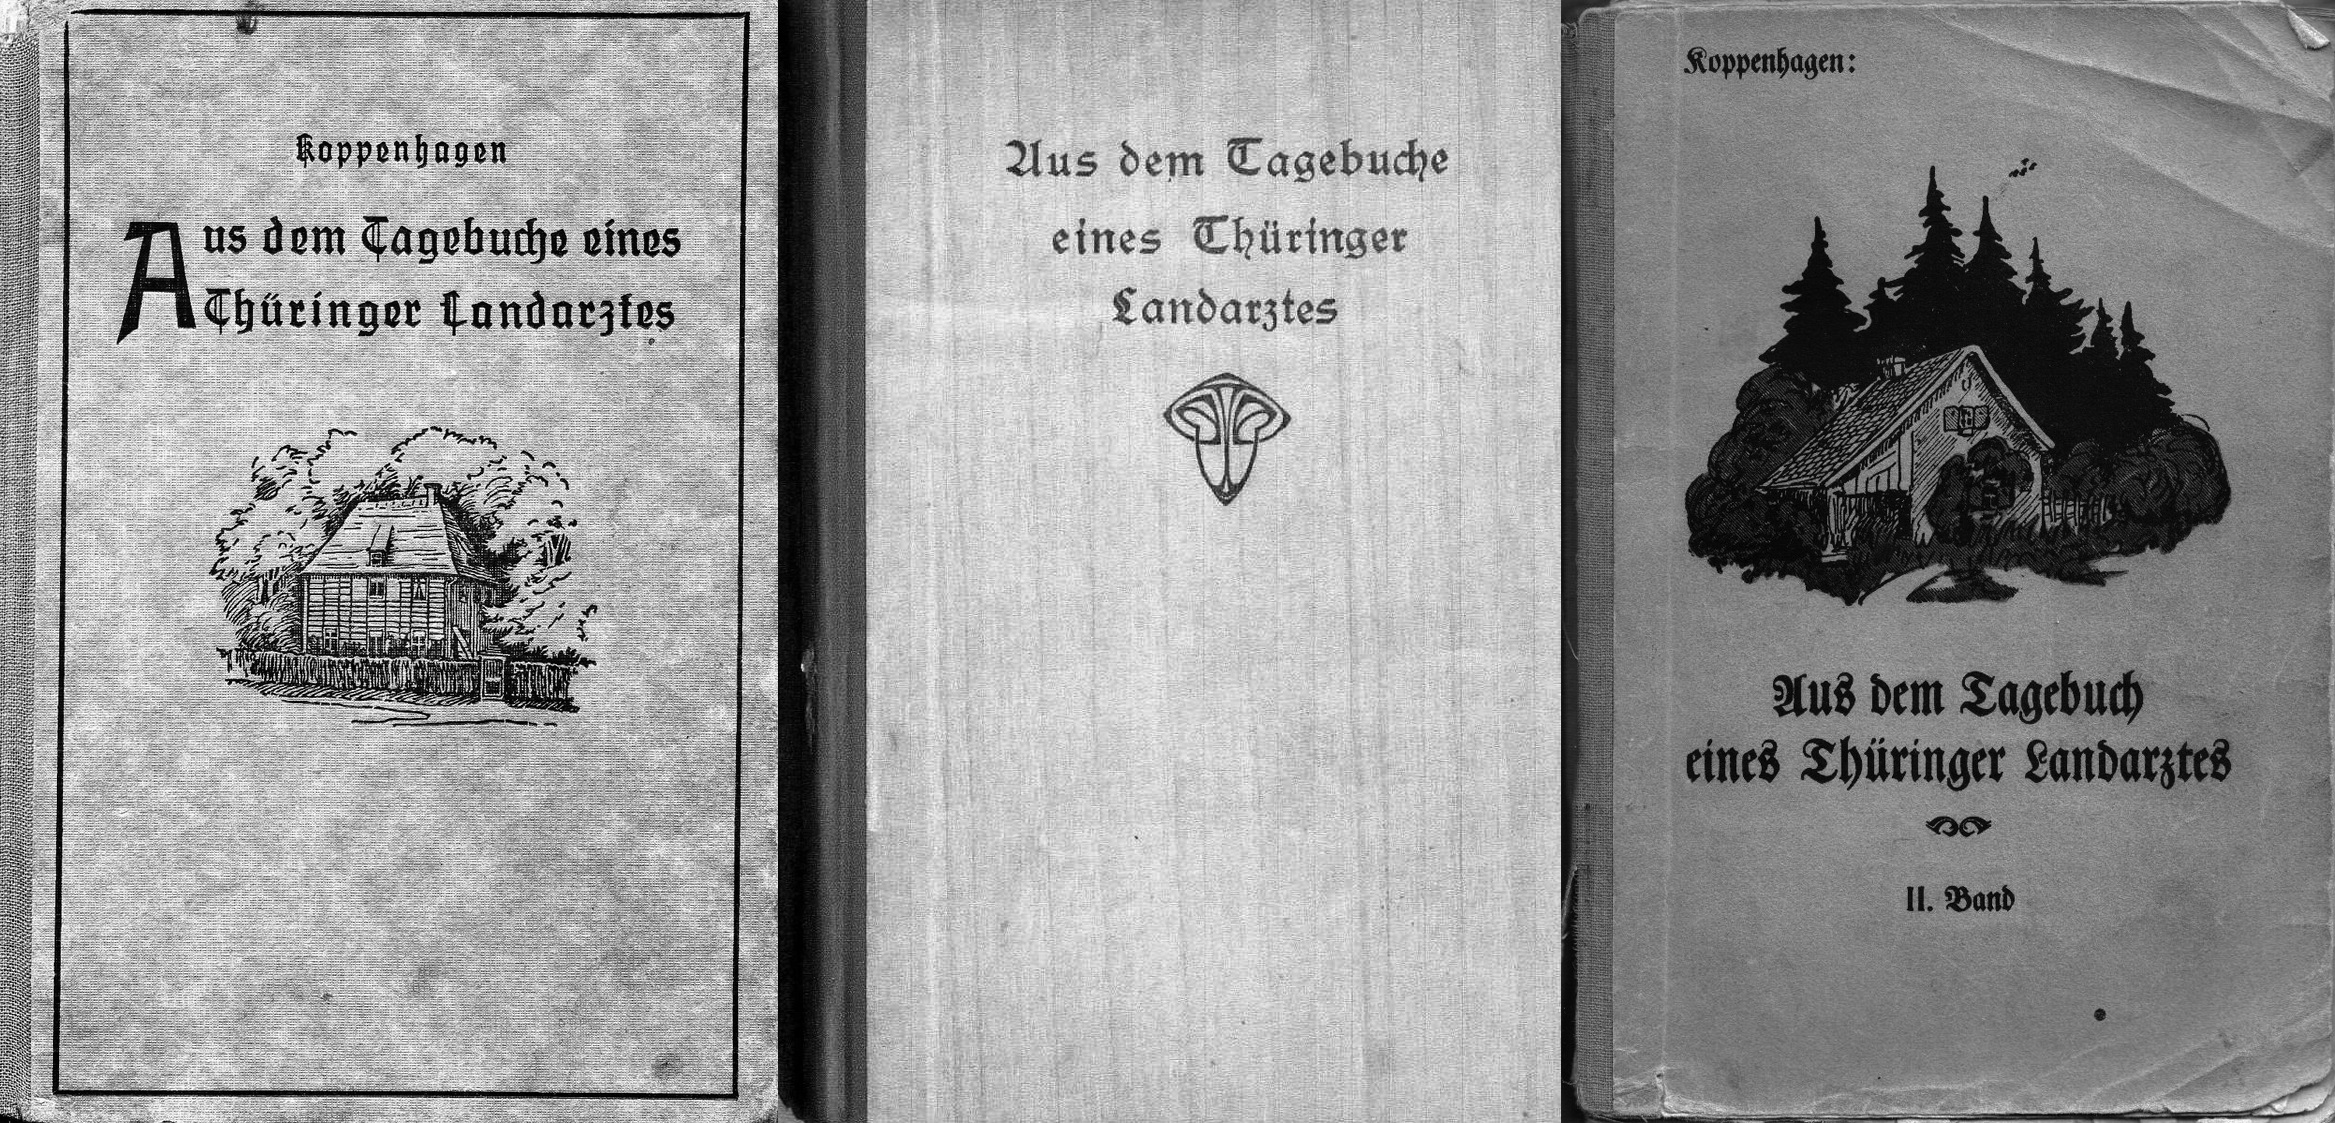 Einige Bücher von Benno Koppenhagen